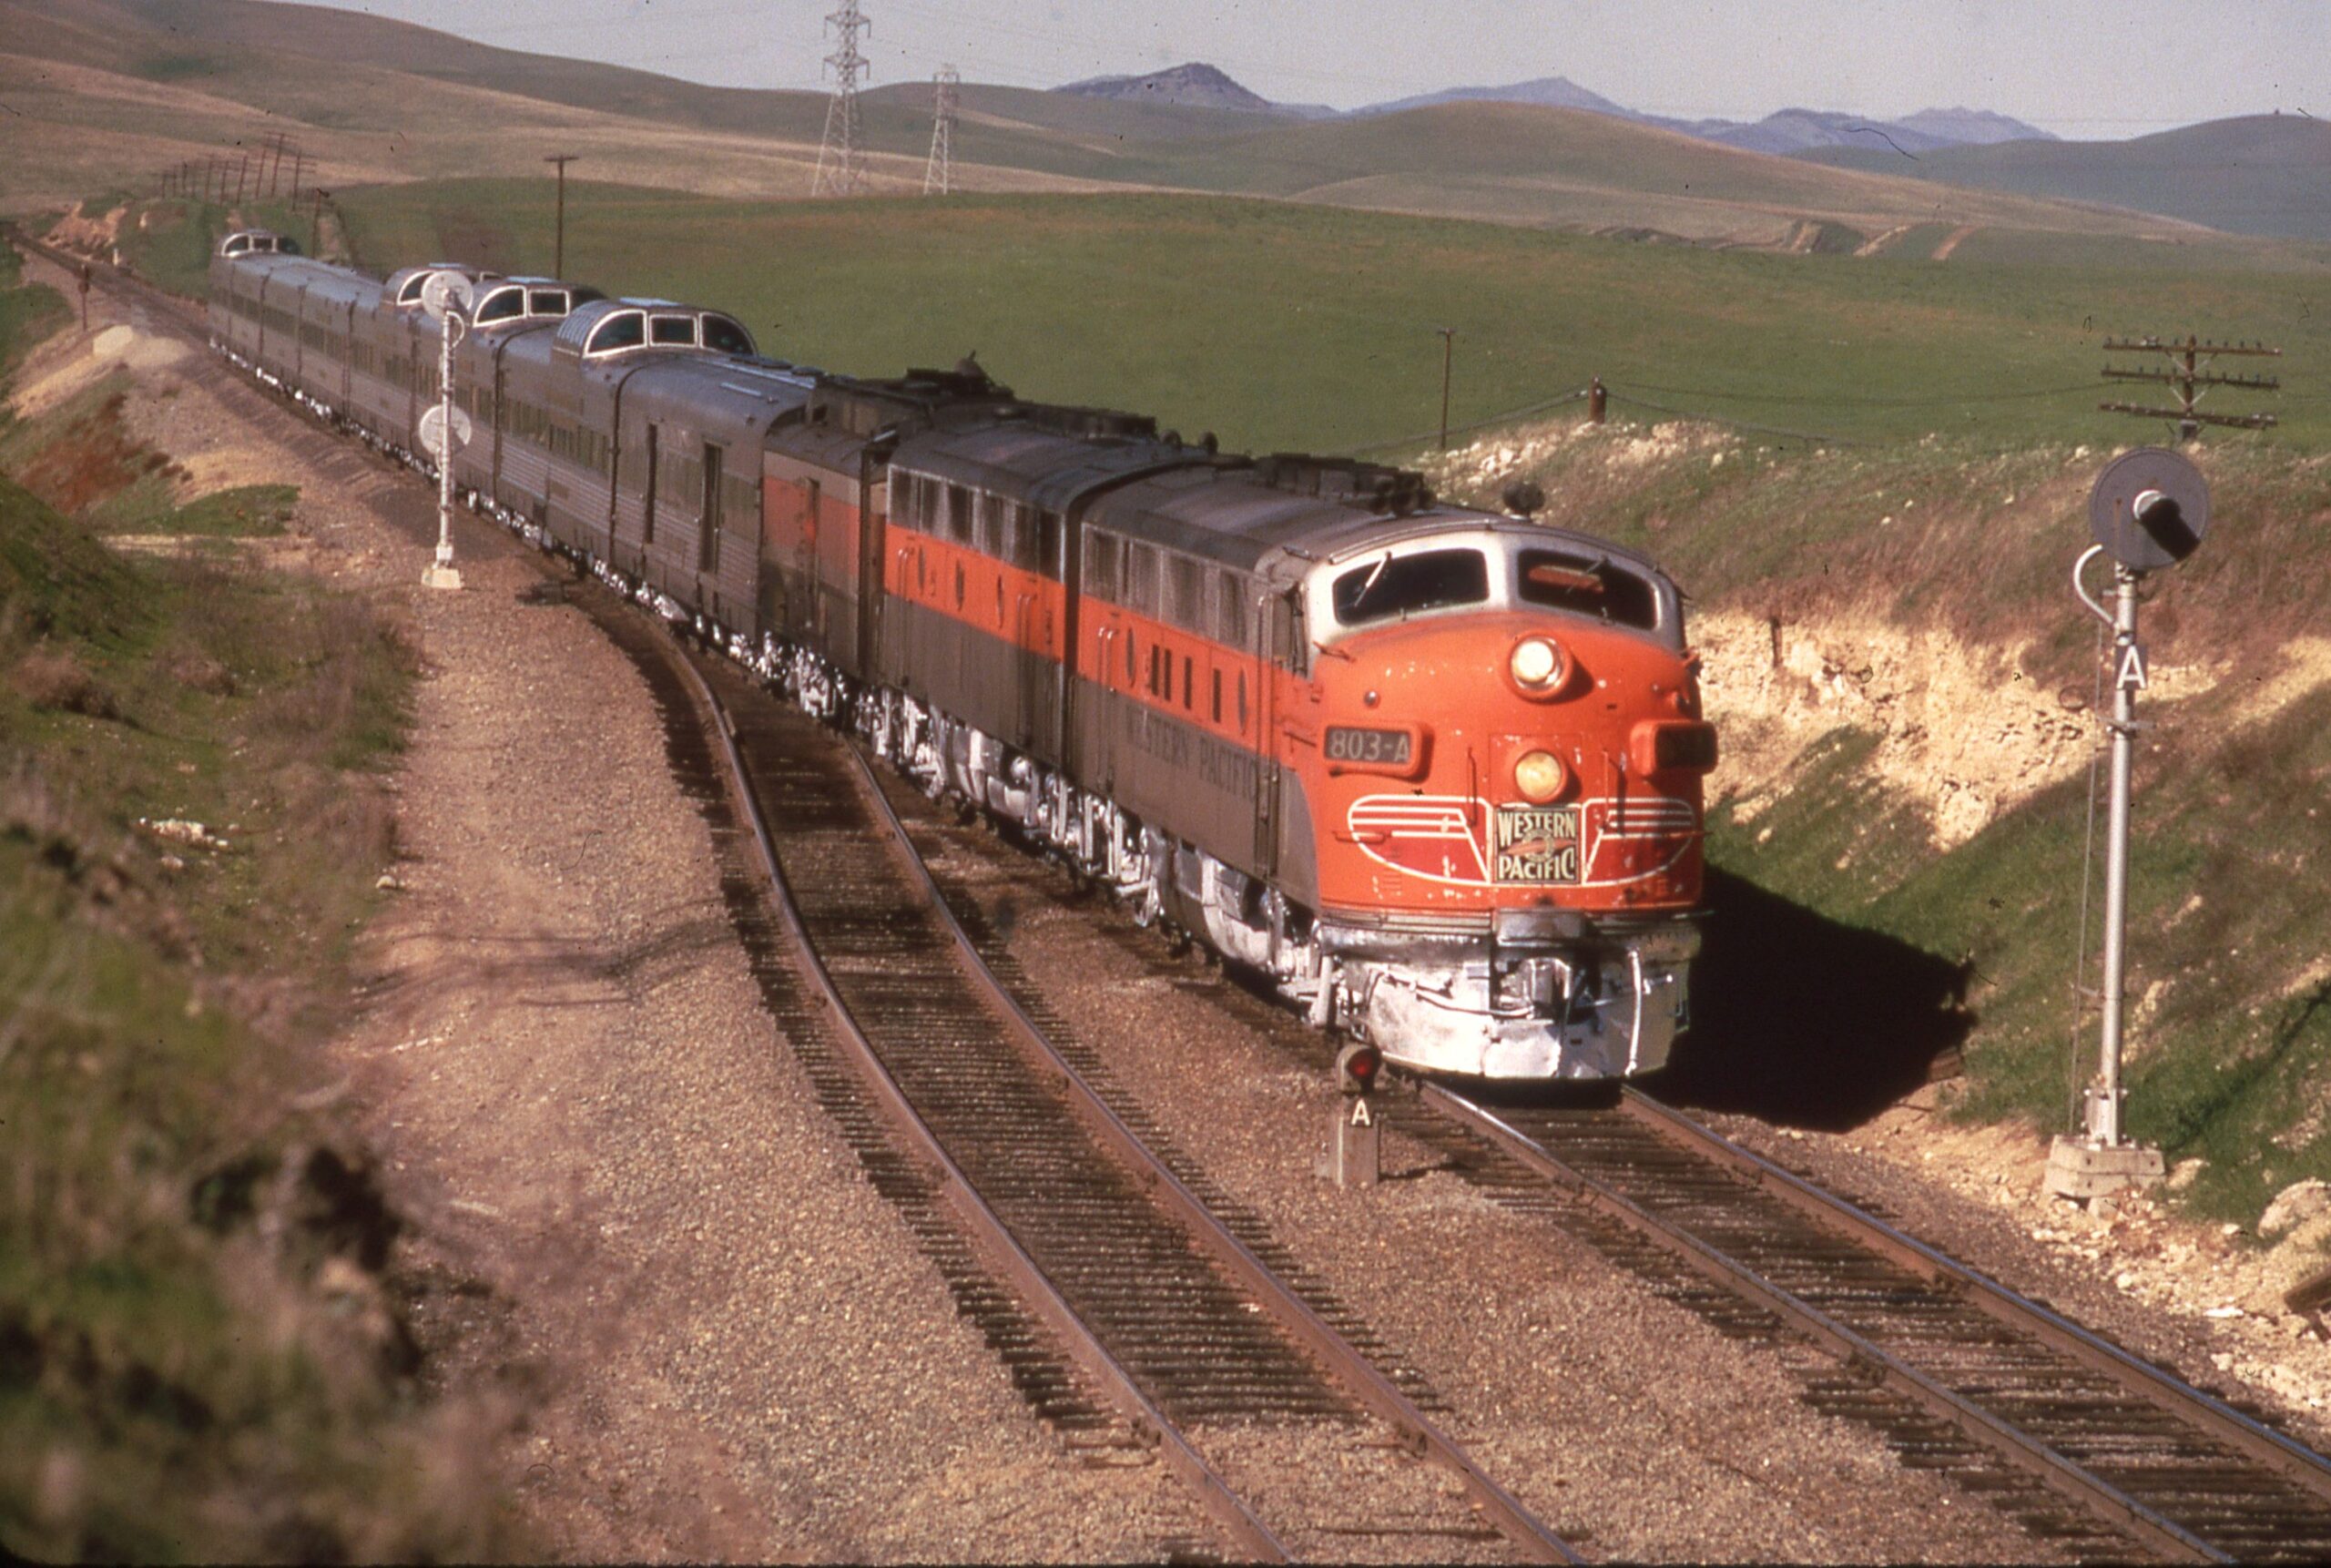 Western Pacific Railway | Altamont CA | EMD F3a 803A diesel-electric locomotive | Train 18 | Feb 11, 1970